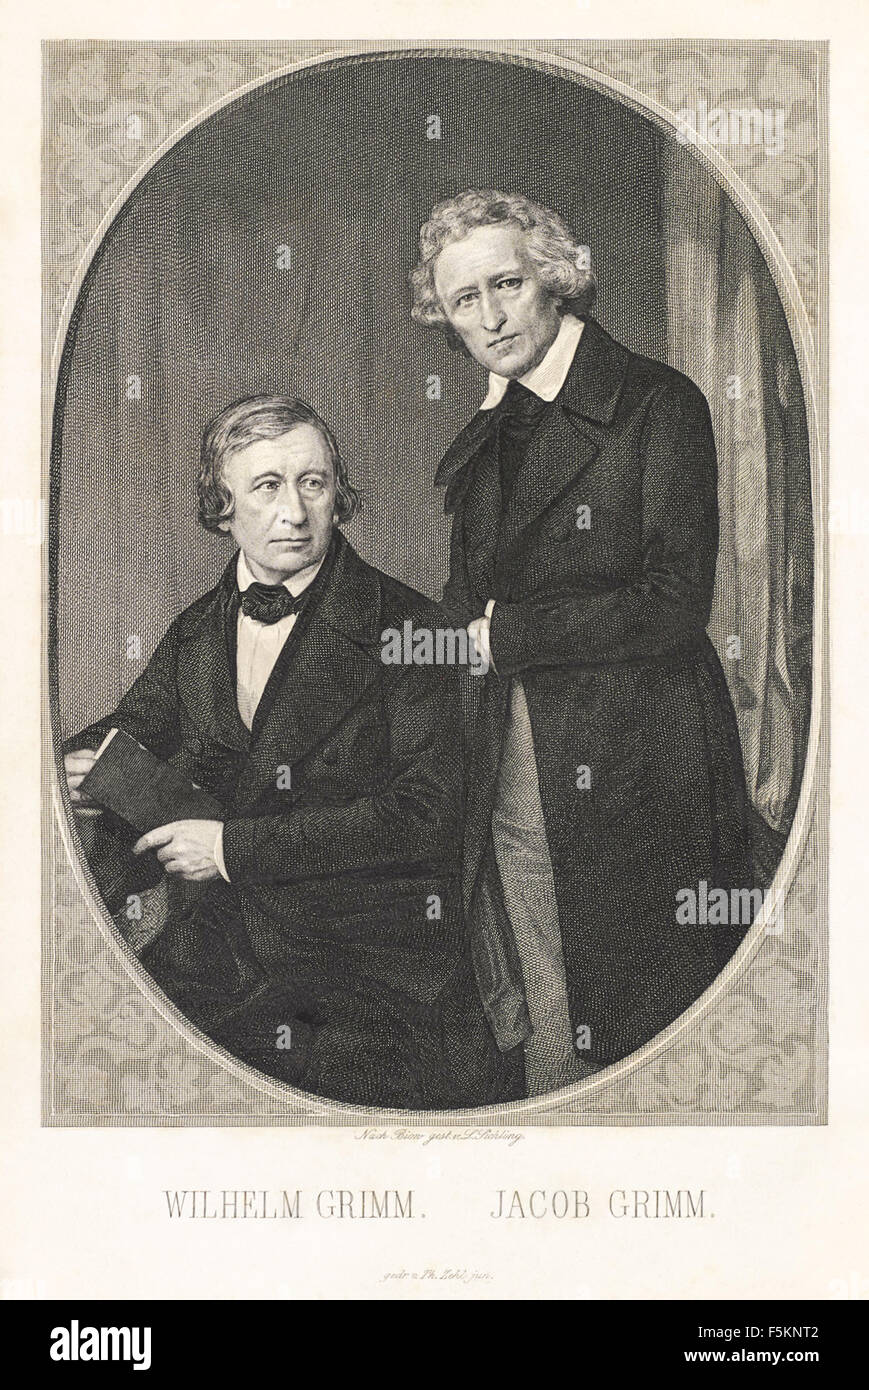 Porträt der Brüder Grimm, Wilhelm Grim (1786-1859) sitzend, Jacob Grimm (1785-1863) stehen; Stahlstich von Lazarus Gottlieb Sichling (1812-1863) von einer frühen Fotografie im Jahre 1847. Siehe Beschreibung für mehr Informationen. Stockfoto